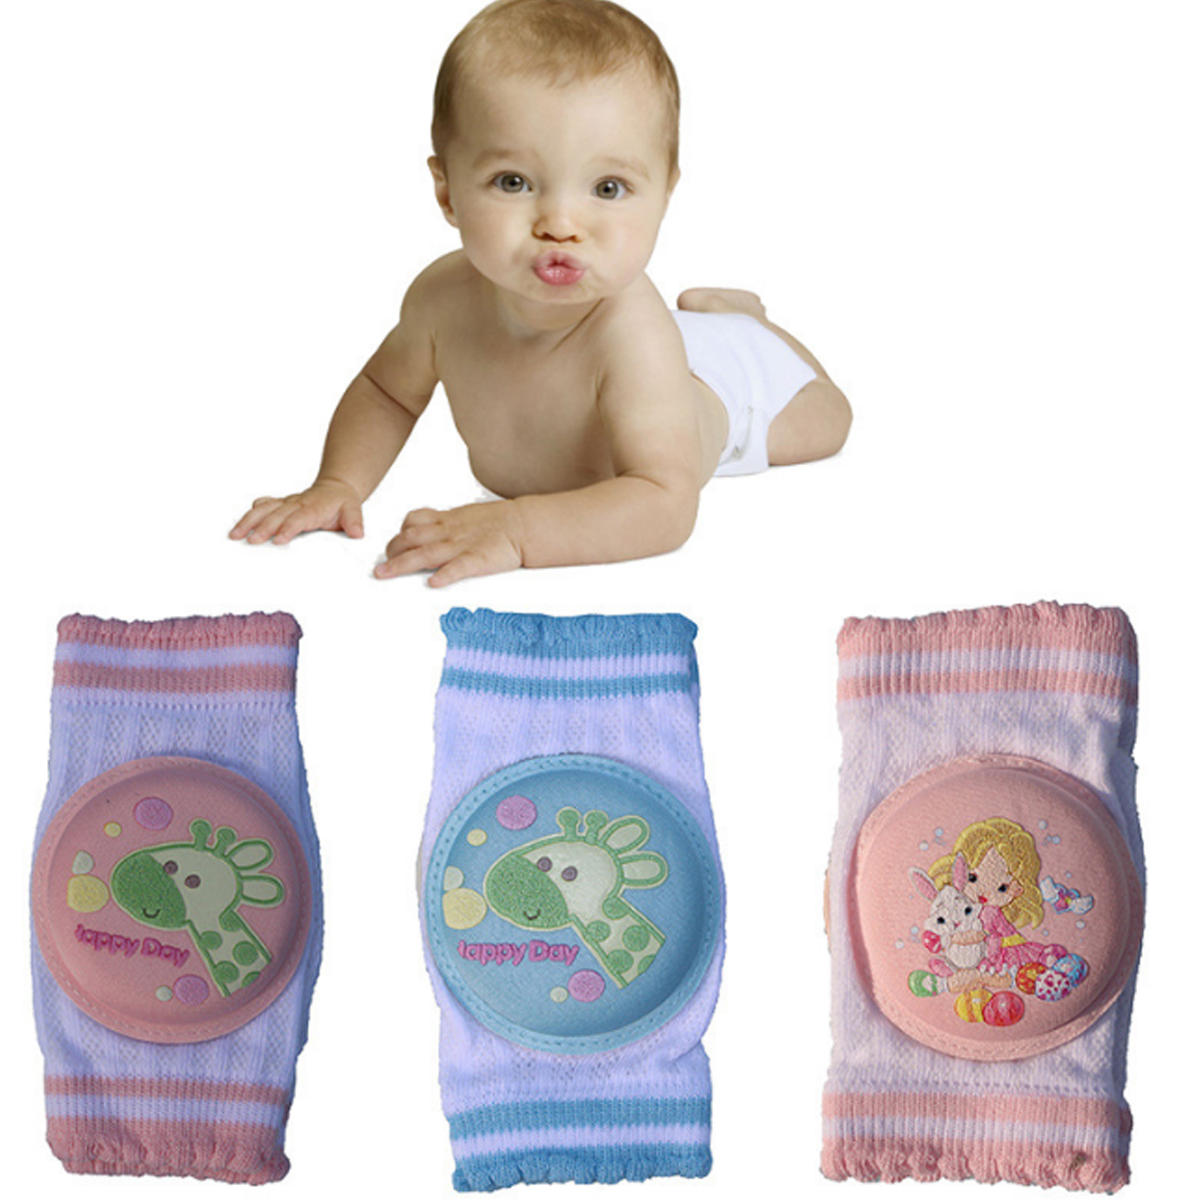 Baby krabbeln Knieschützer Anti-Kollision Atmungsaktiv Bein Ellenbogenschutz Schwamm Mesh Baby Kniesocken 